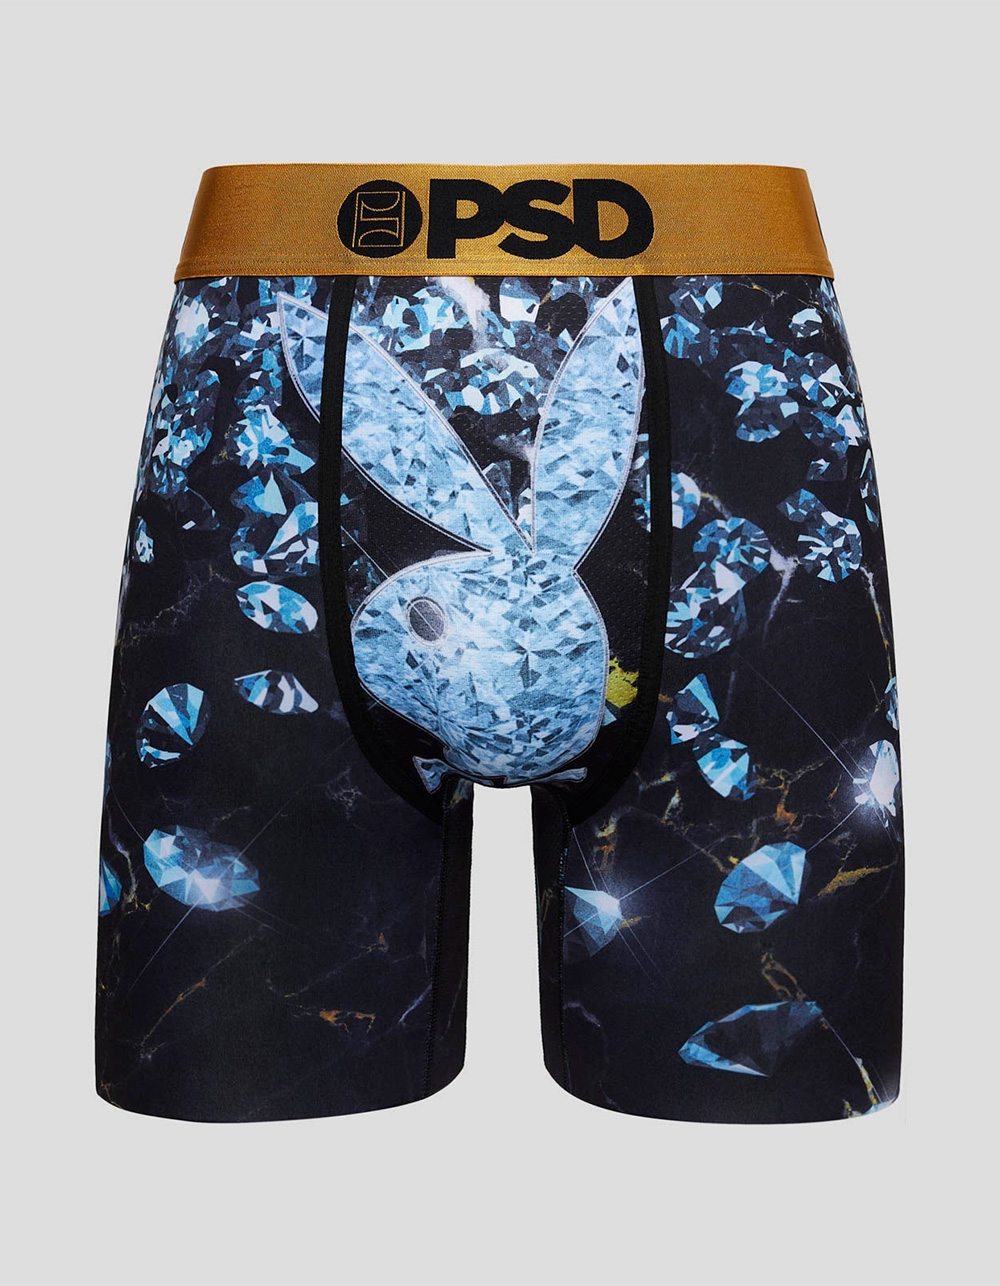 PSD Underwear - Affordable Luxury Boxer Briefs